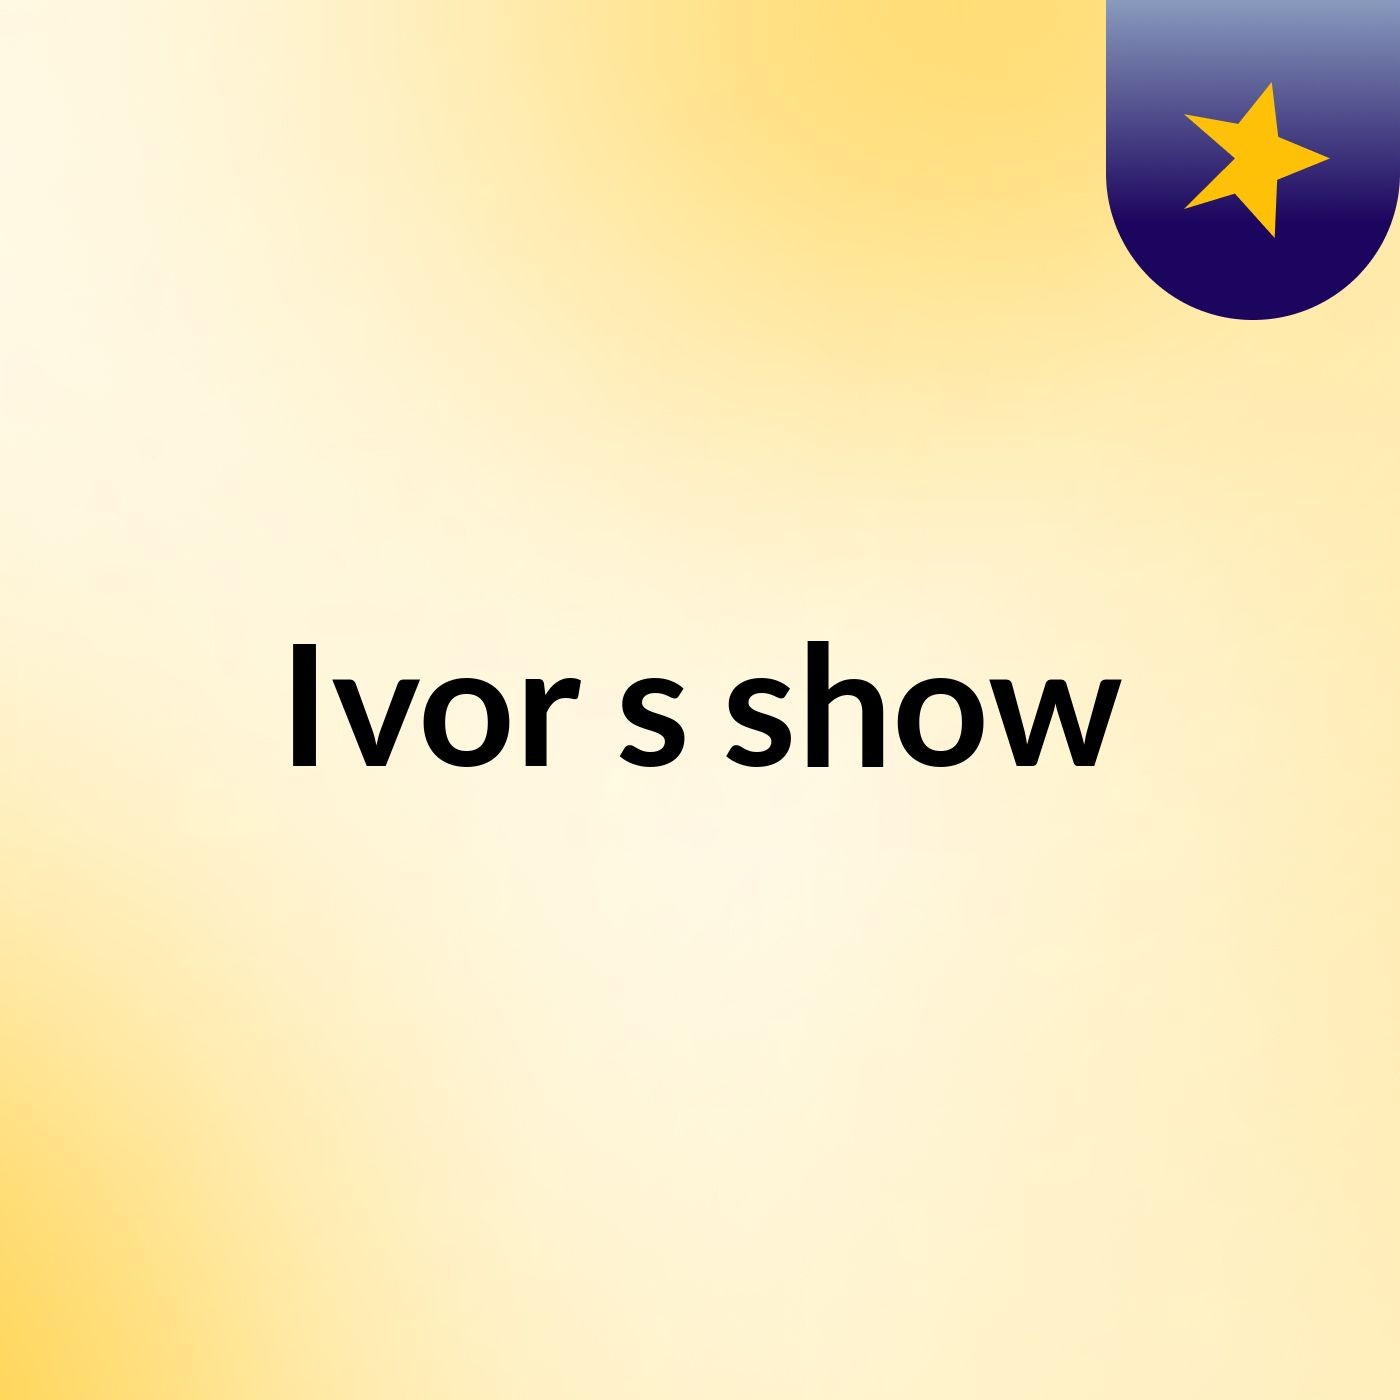 Ivor's show